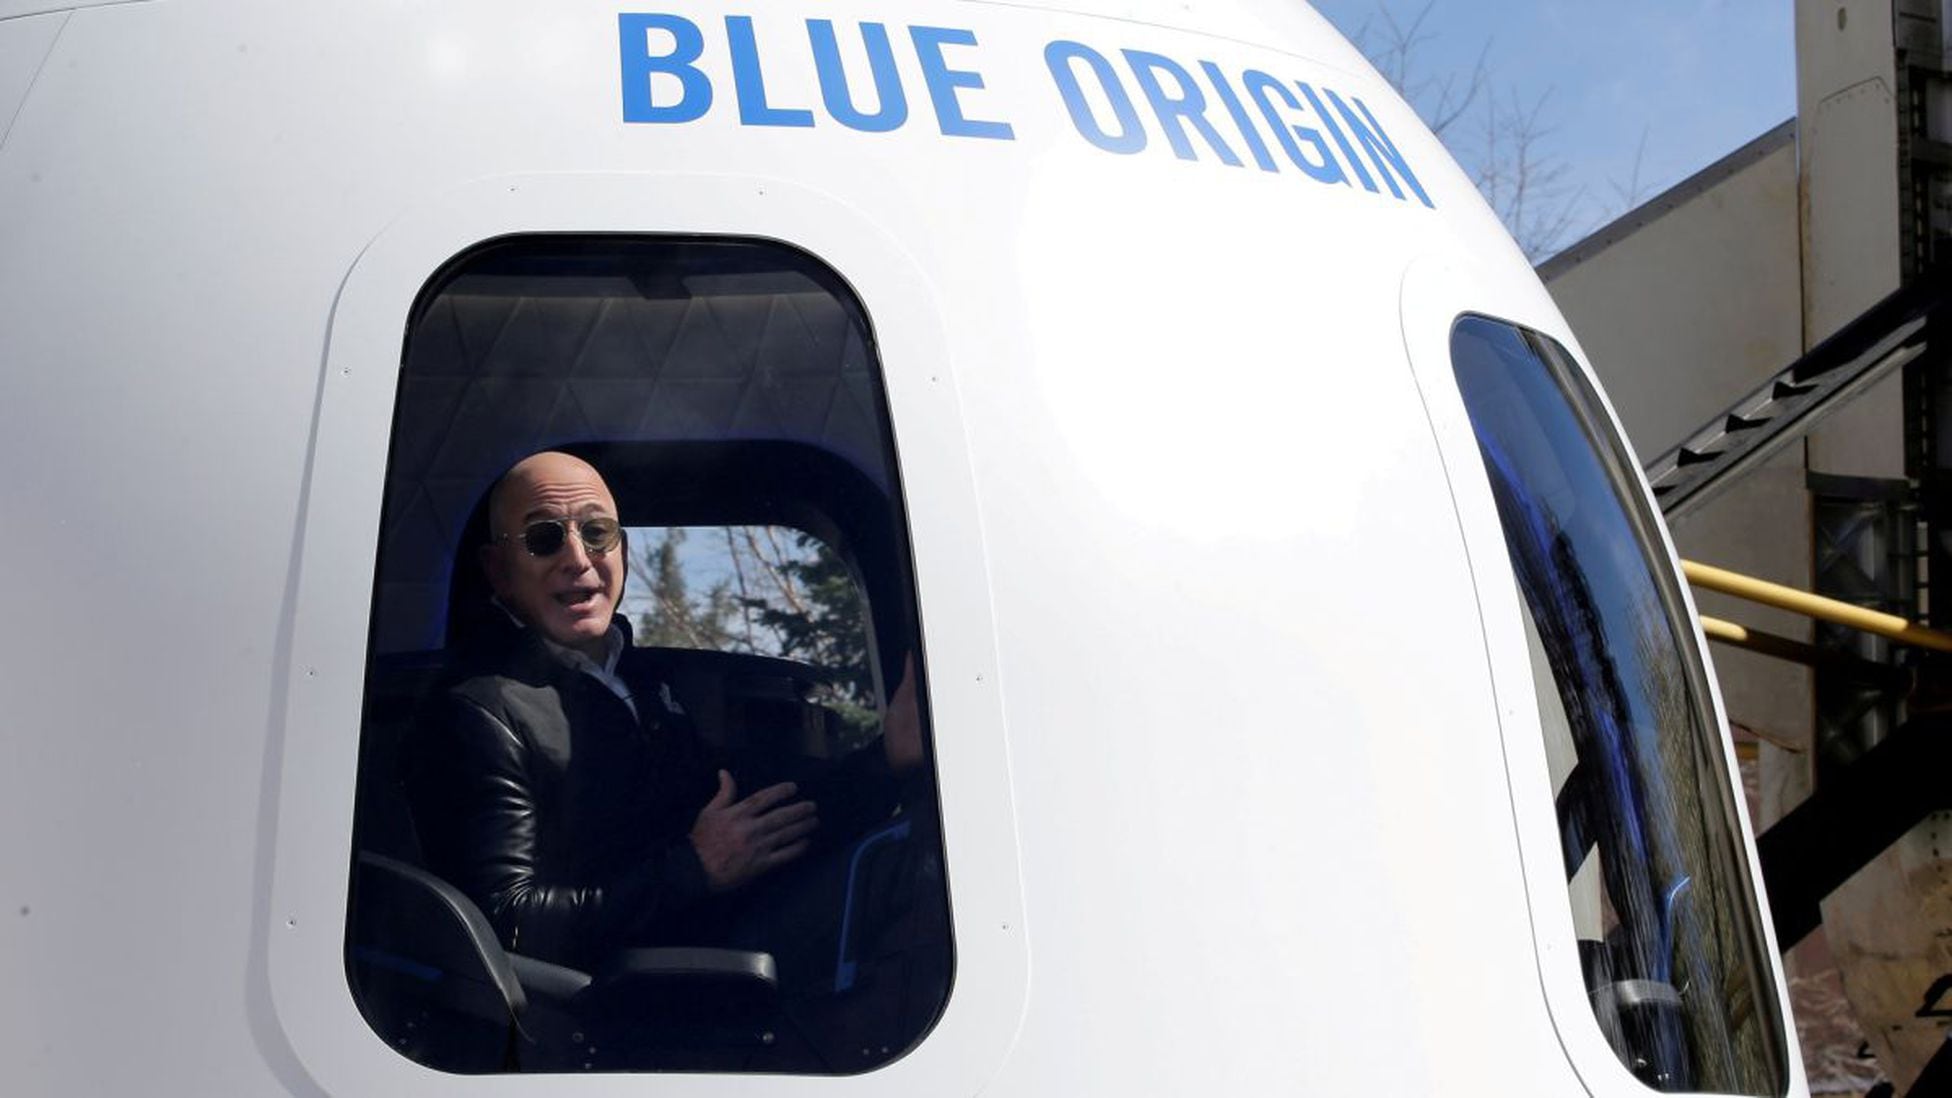 Jeff Bezos và tên lửa New Shepard của Blue Origin: Ý tưởng về người giàu nhất thế giới đi phiêu lưu trên tên lửa sẽ khiến bạn tò mò. Nhưng video này còn giới thiệu tên lửa New Shepard mới nhất của Blue Origin và những công nghệ tiên tiến đã được áp dụng trên đó. Hãy cùng tìm hiểu!